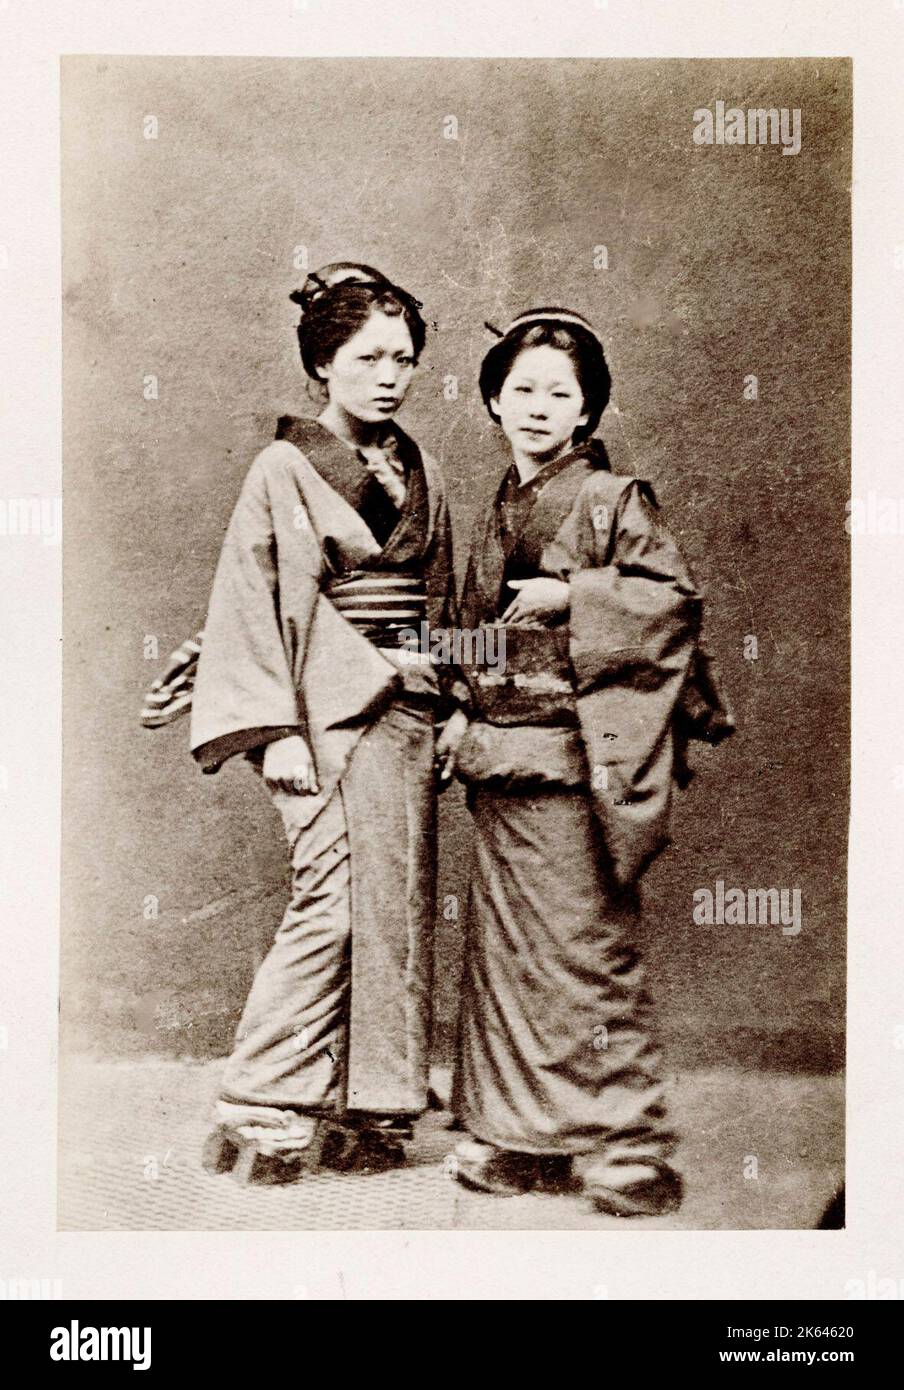 Vintage 19. Jahrhundert Fotografie - frühe fotografische Porträt aus Japan, wahrscheinlich das Werk der japanischen Fotografin Shimooka Renjo - zwei junge Frauen. Stockfoto